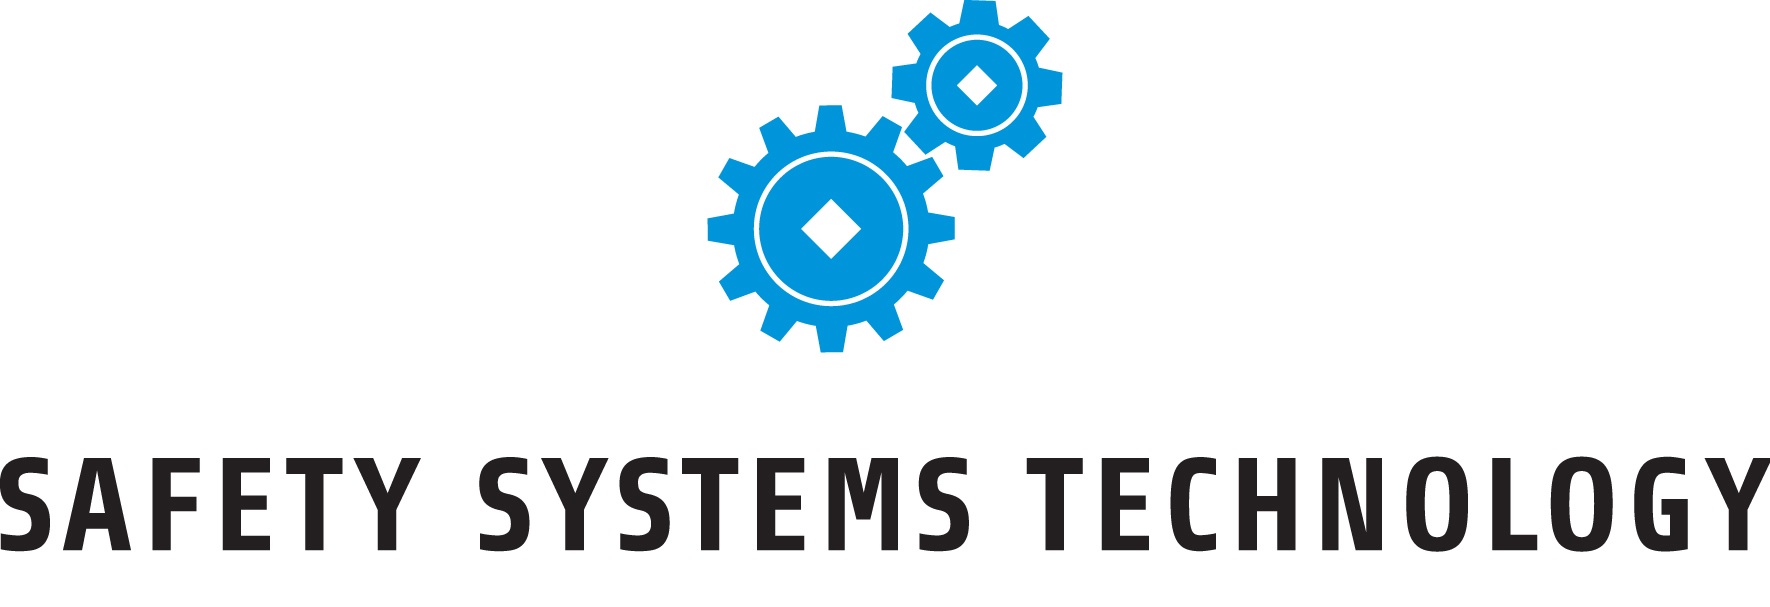 Safety Systems Technology UK Ltd